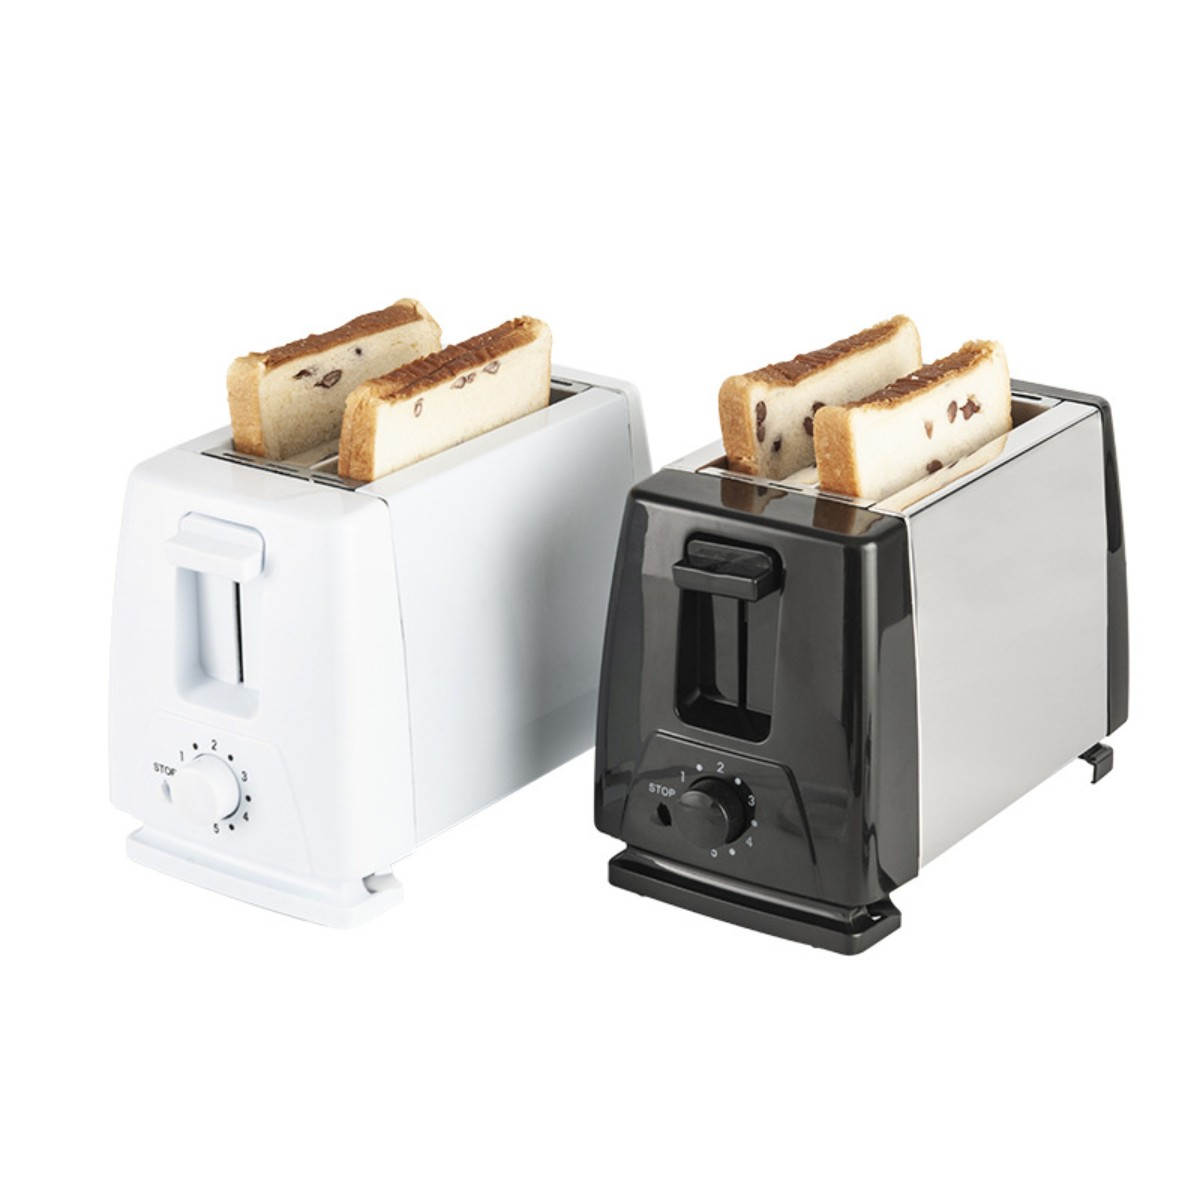 FEI Brotbackautomat 220V Weiß Toaster 2) Sandwich Toaster Weiß Watt, Schlitze: Frühstück Toaster Maker (750